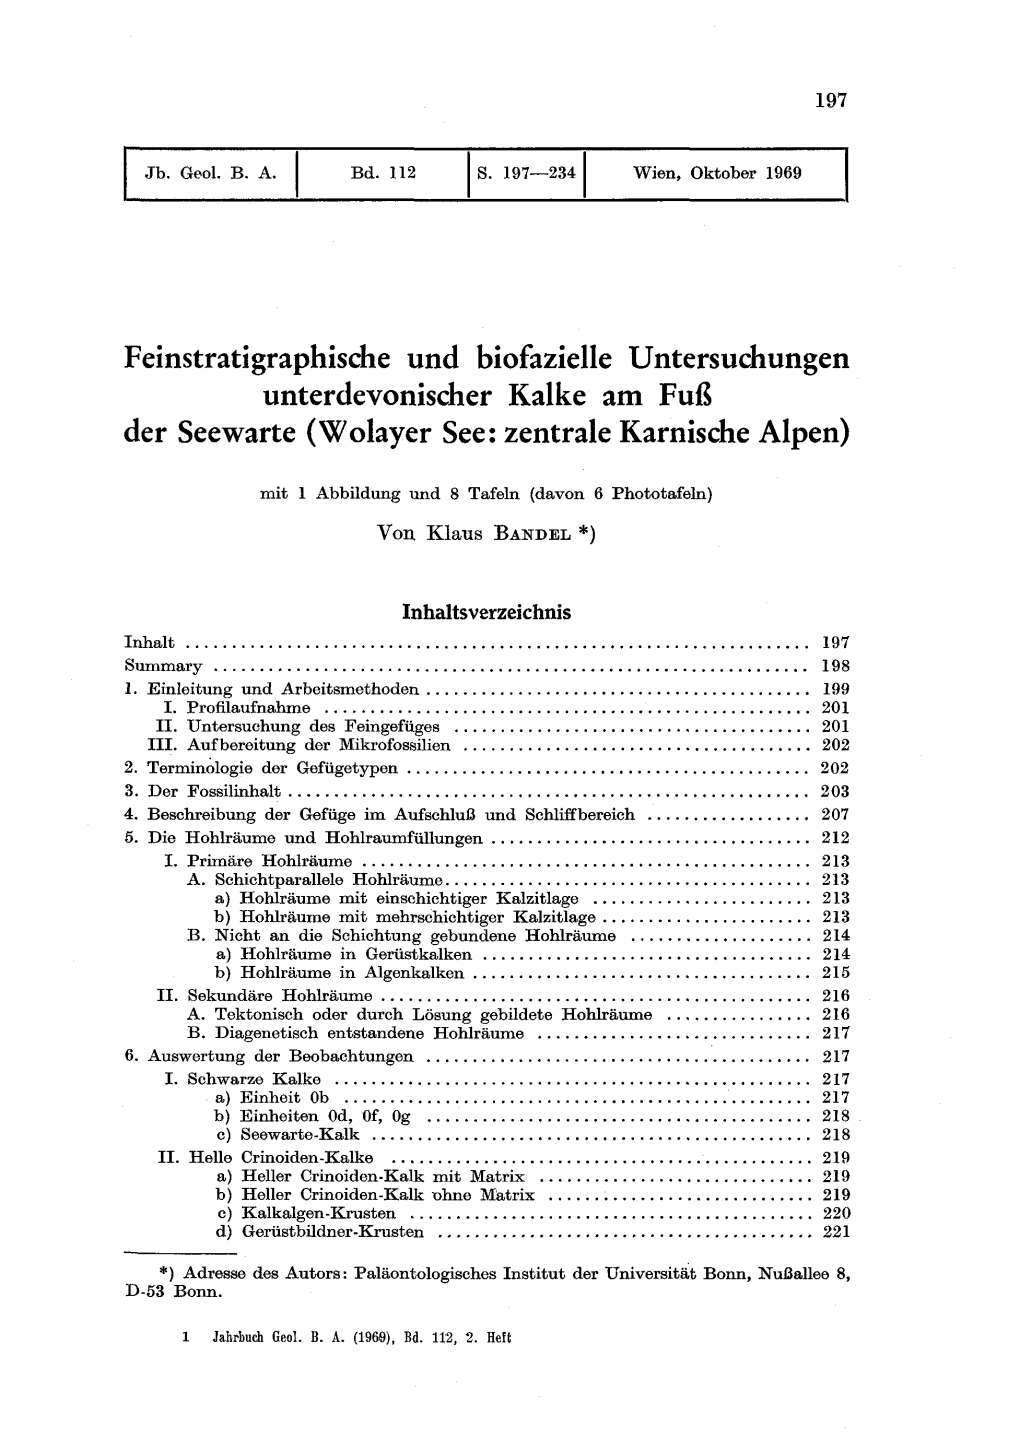 Feinstratigraphische Und Biofazielle Untersuchungen Unterdevonischer Kalke Am Fuß Der Seewarte (Wolayer See: Zentrale Karnische Alpen)